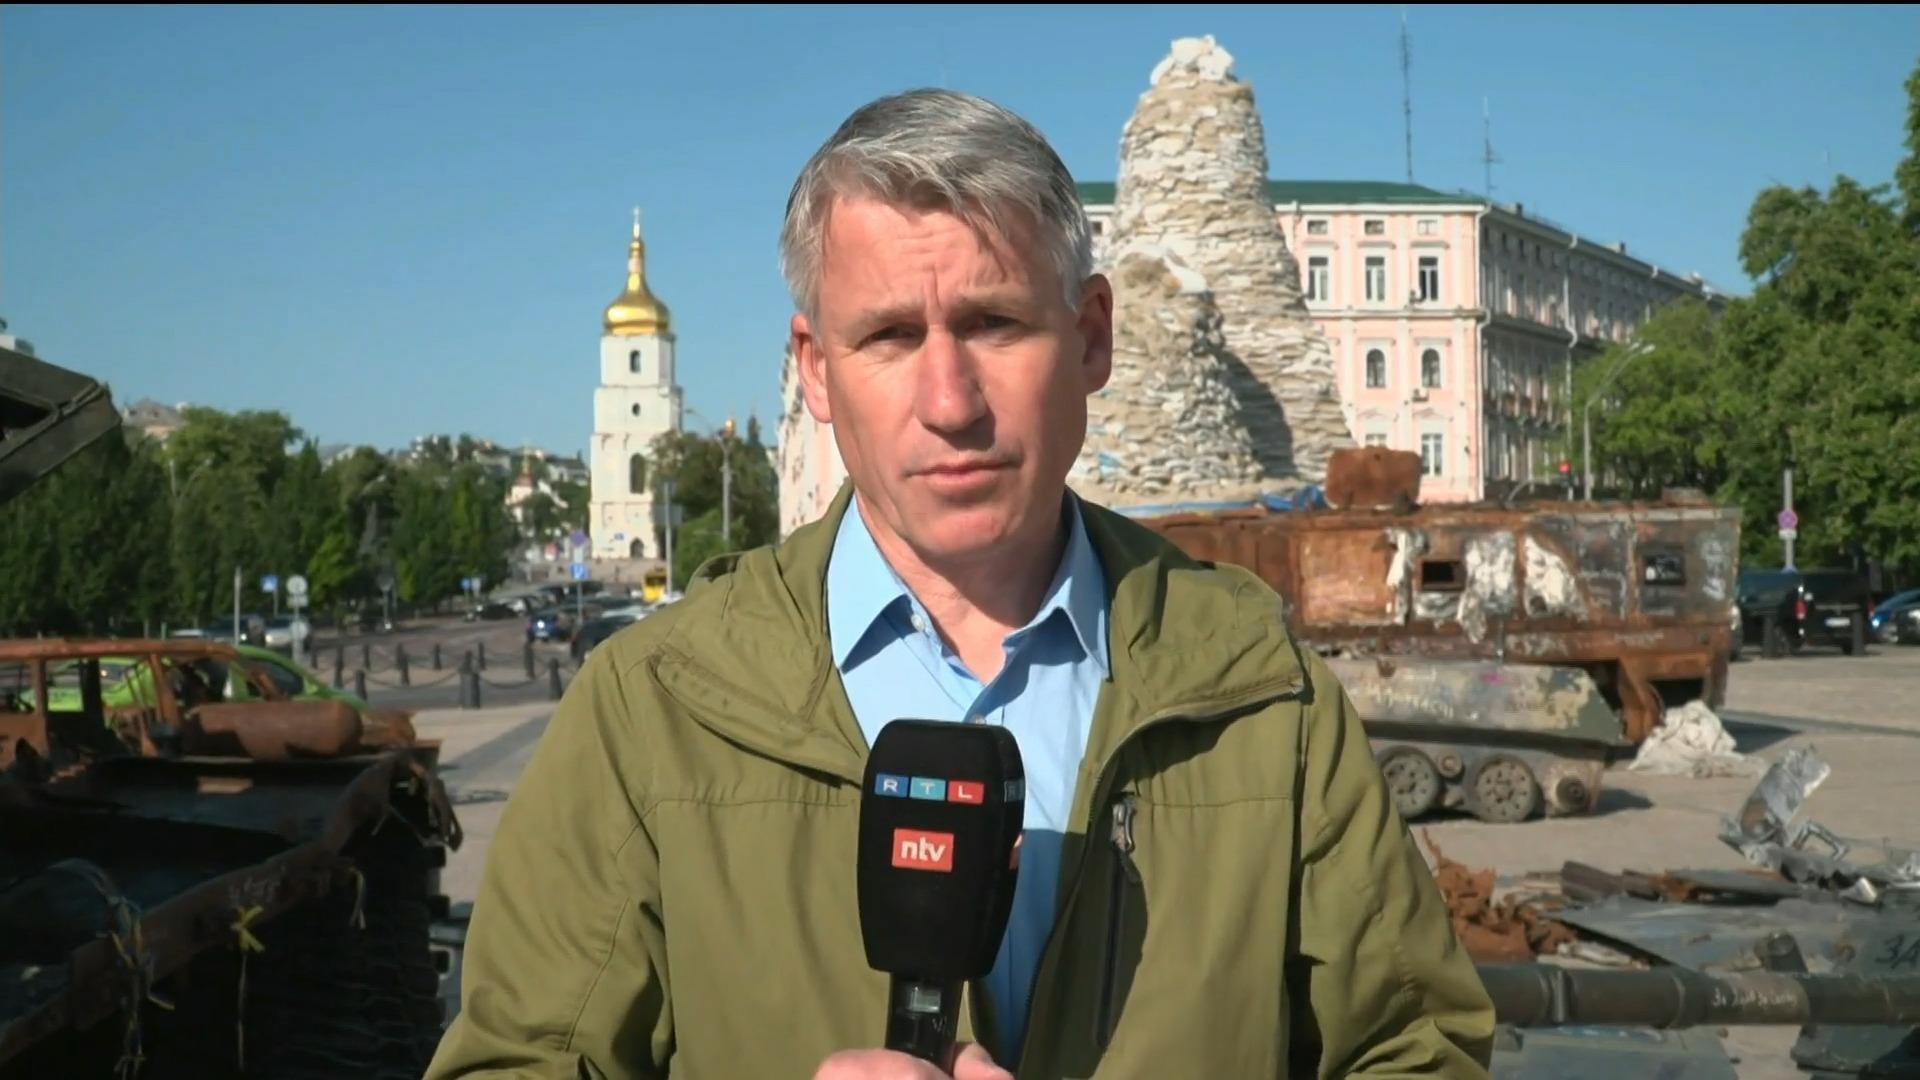 "Los informes son malos: 3 muertos, incluidos 2 niños" Jürgen Fichert sobre los ataques a Kiev